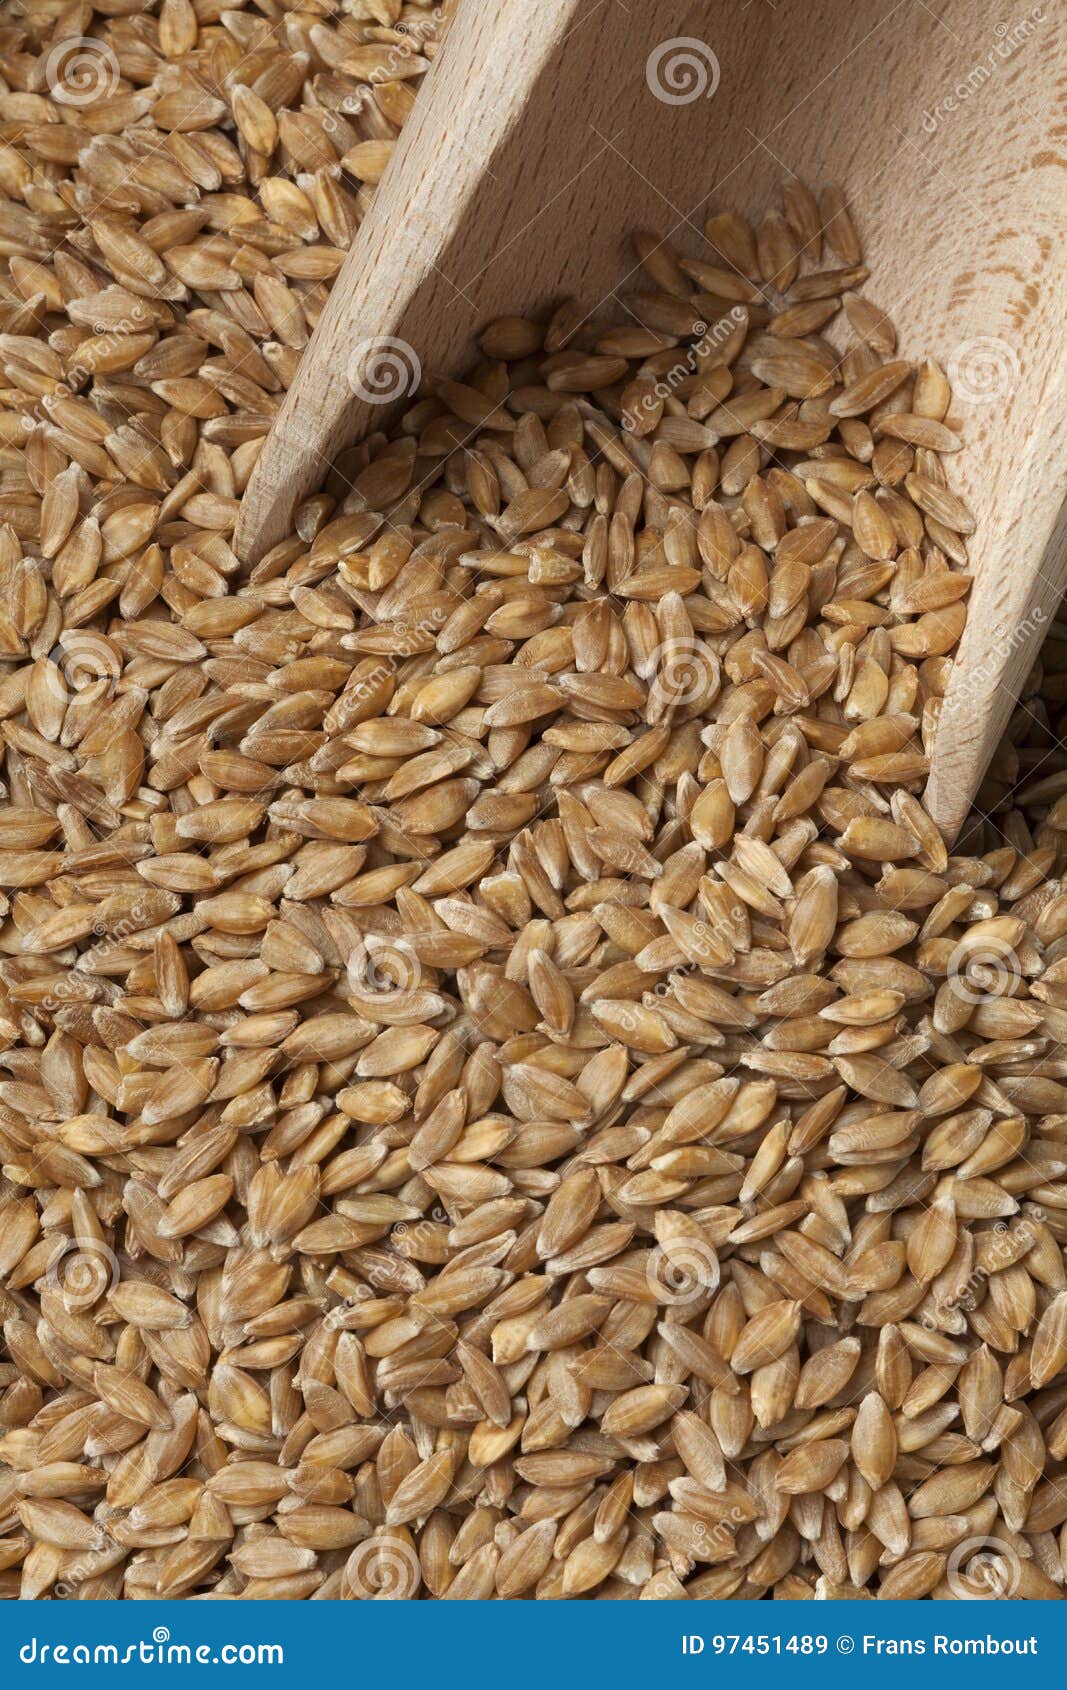 einkorn wheat seeds